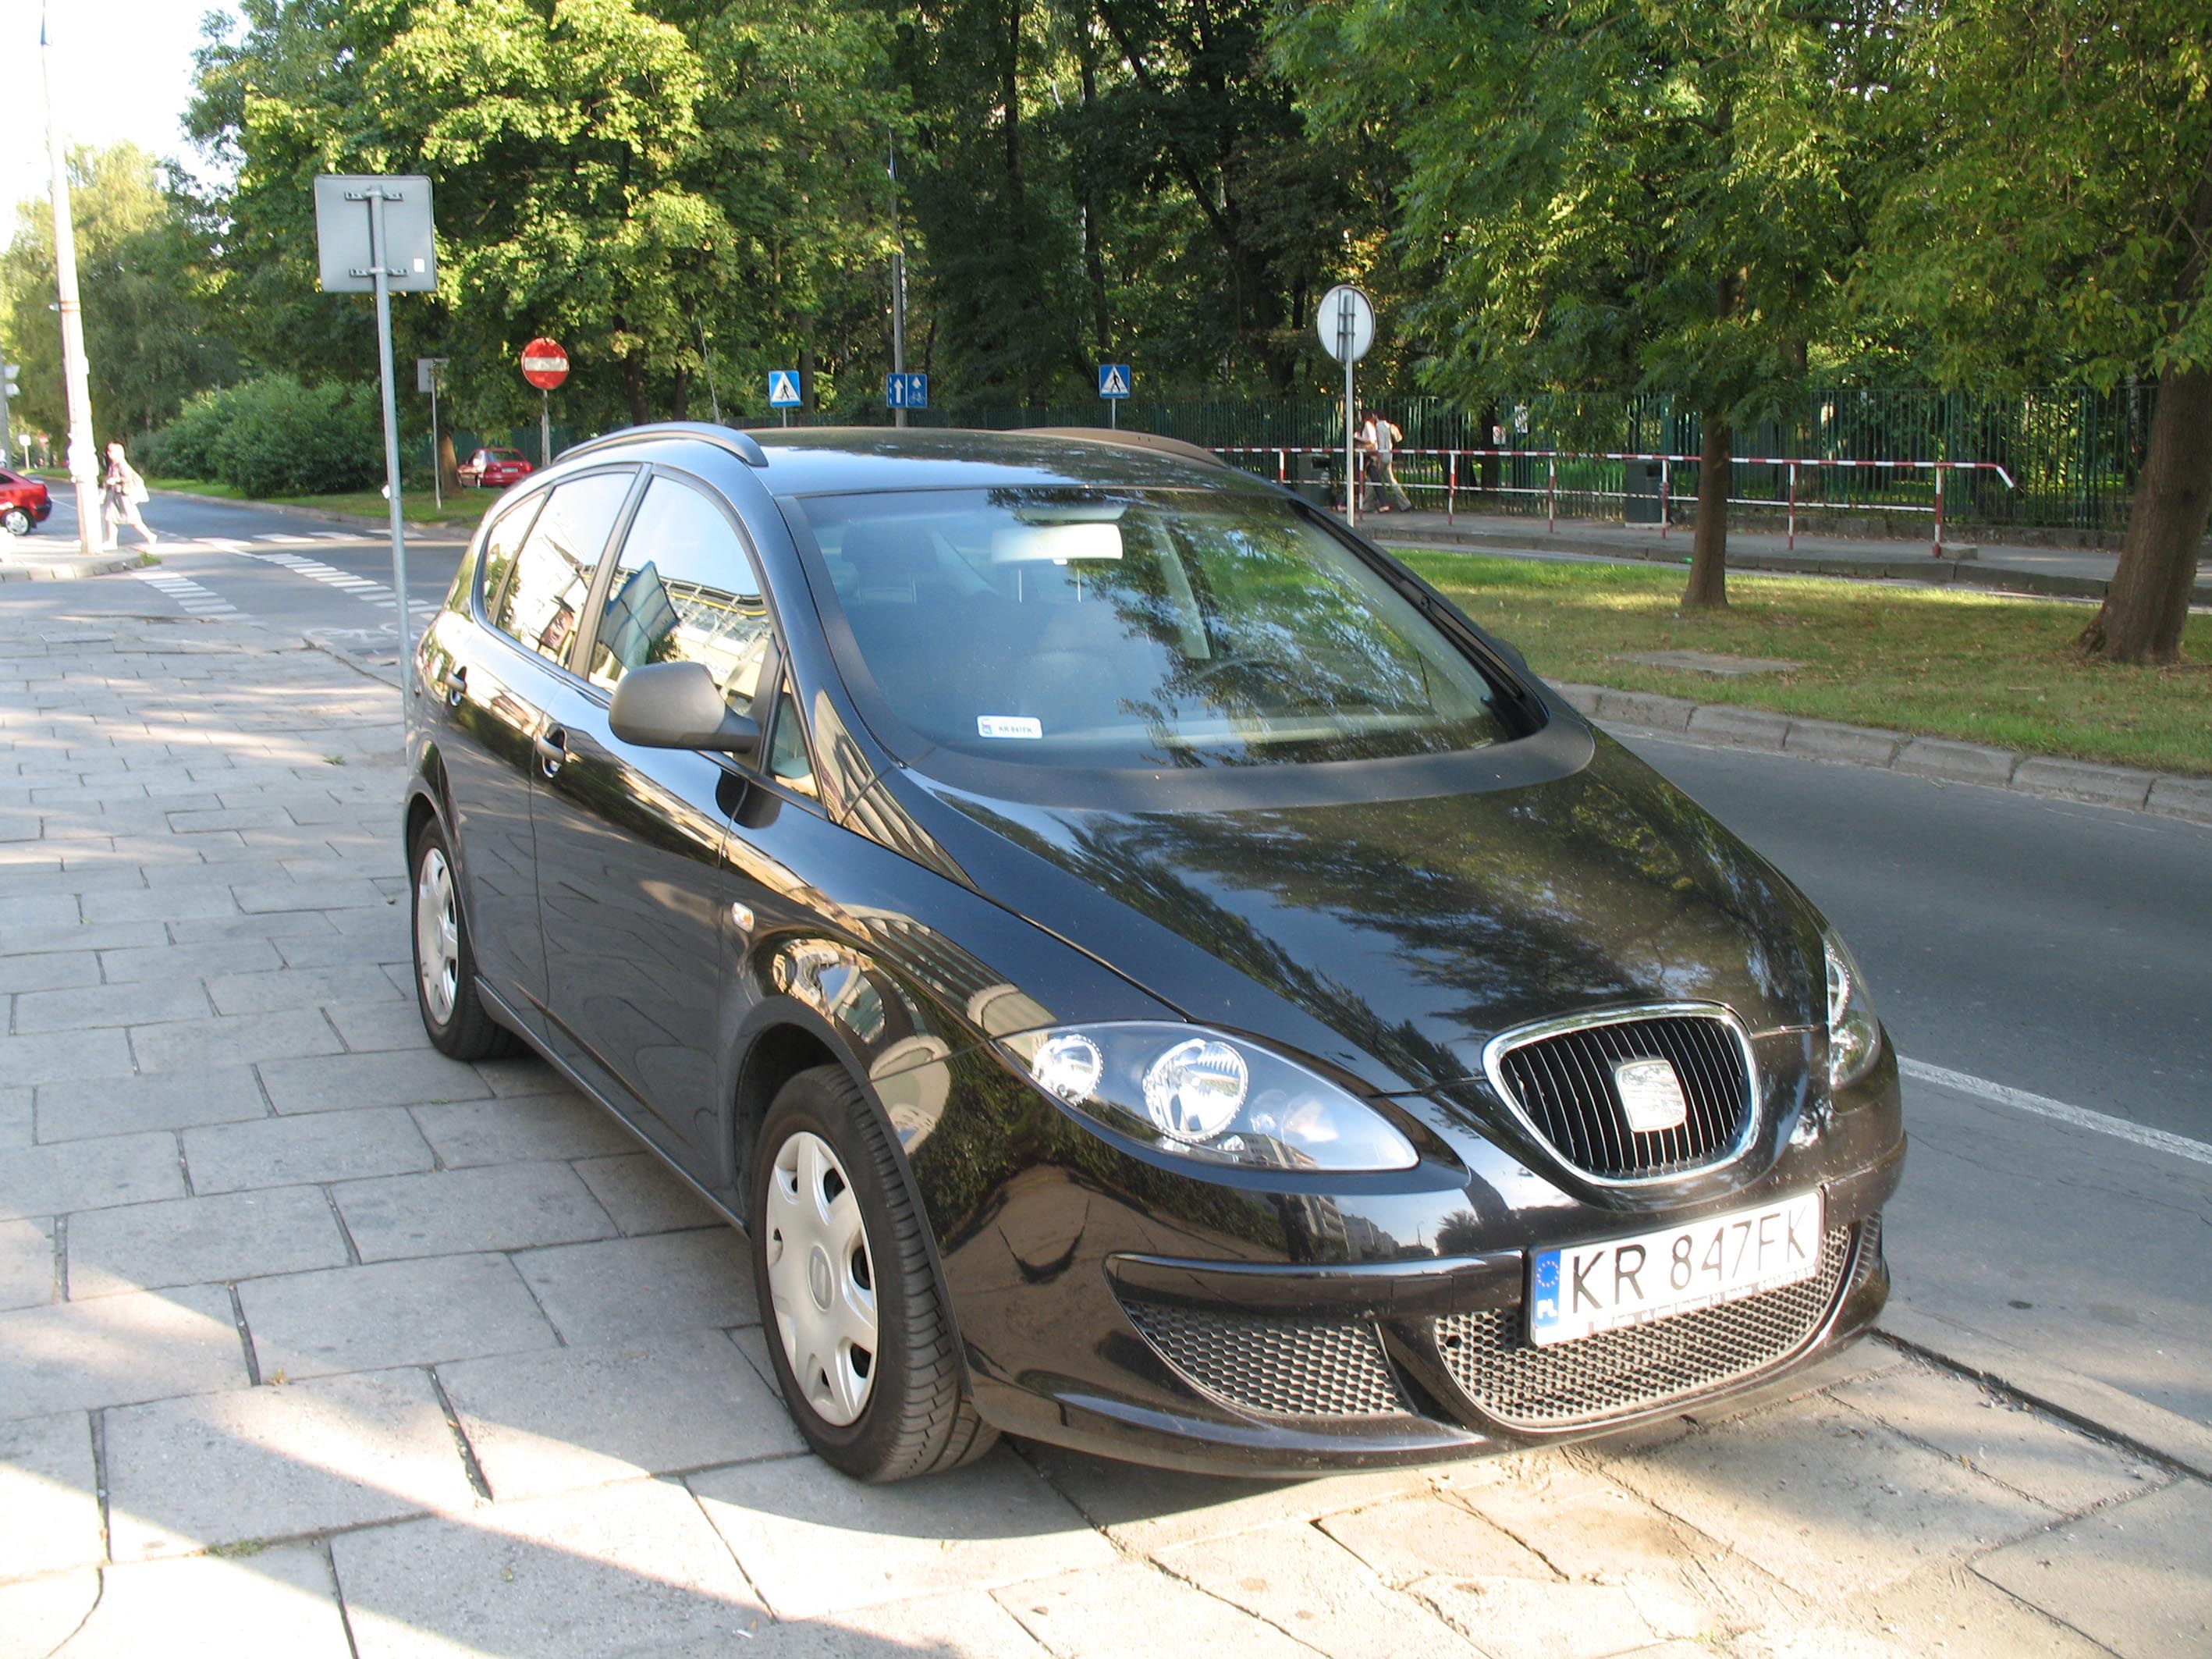 File:SEAT Altea XL in Krakow.jpg - Wikimedia Commons